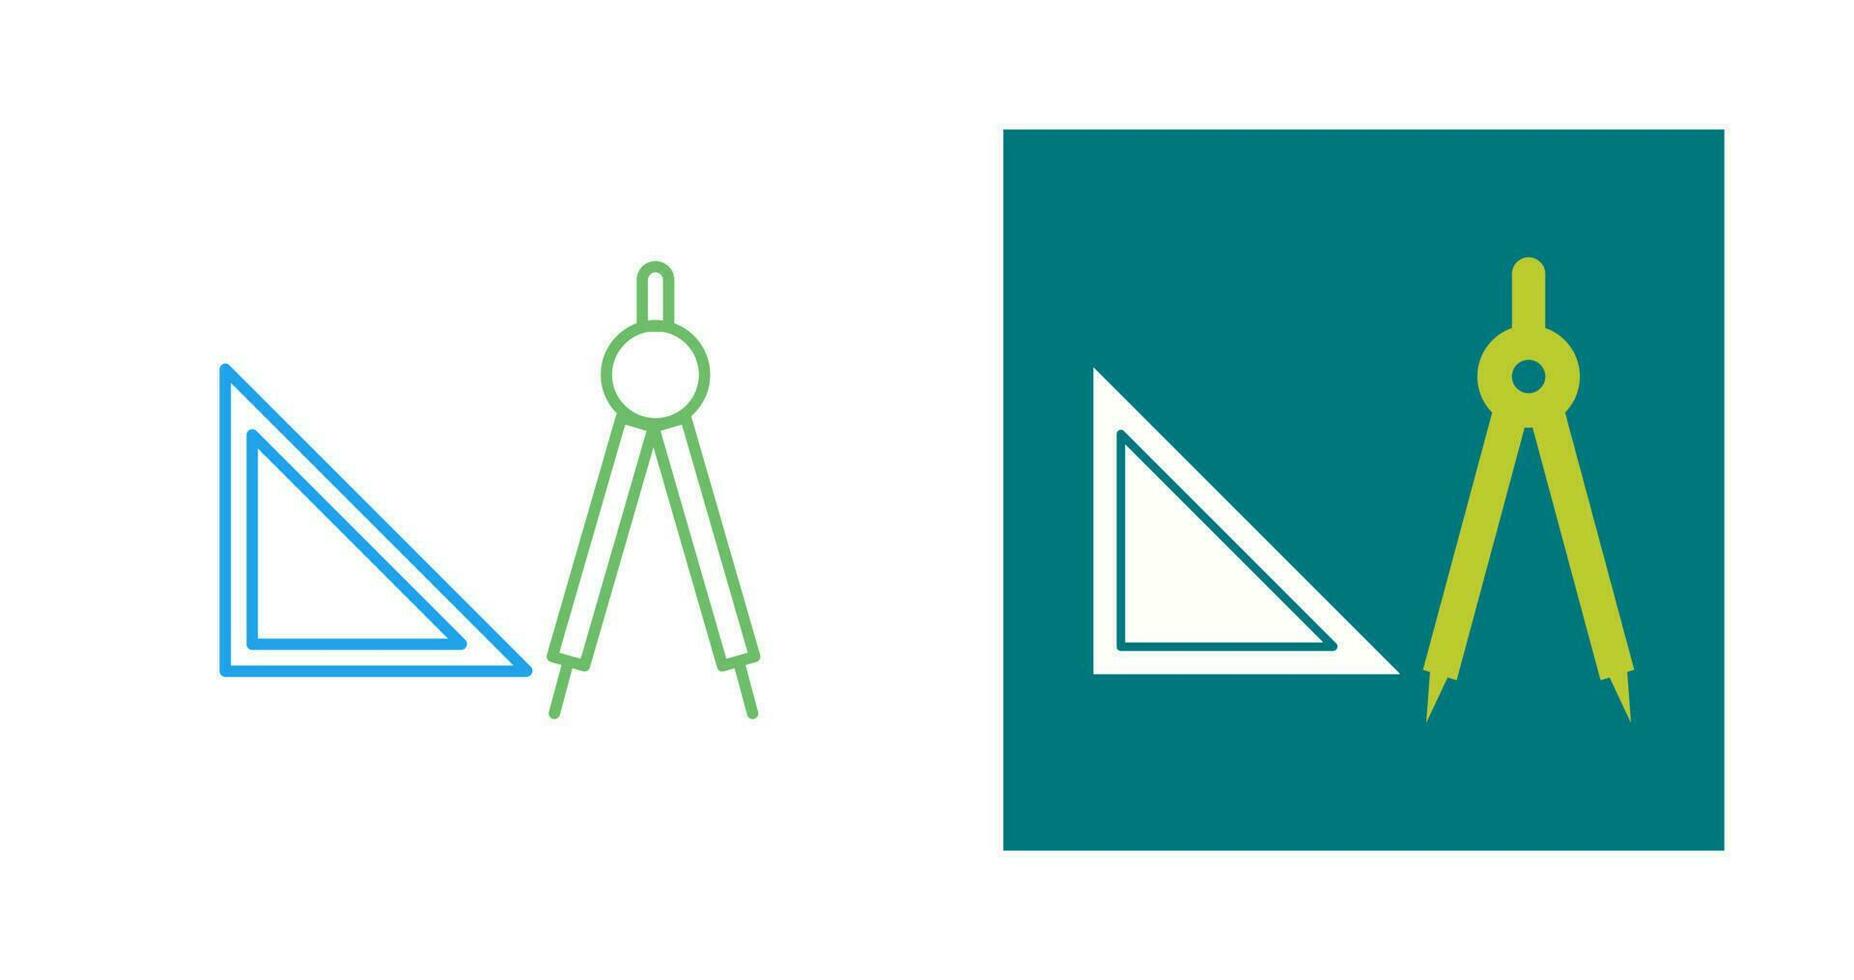 Geometry Tools Vector Icon